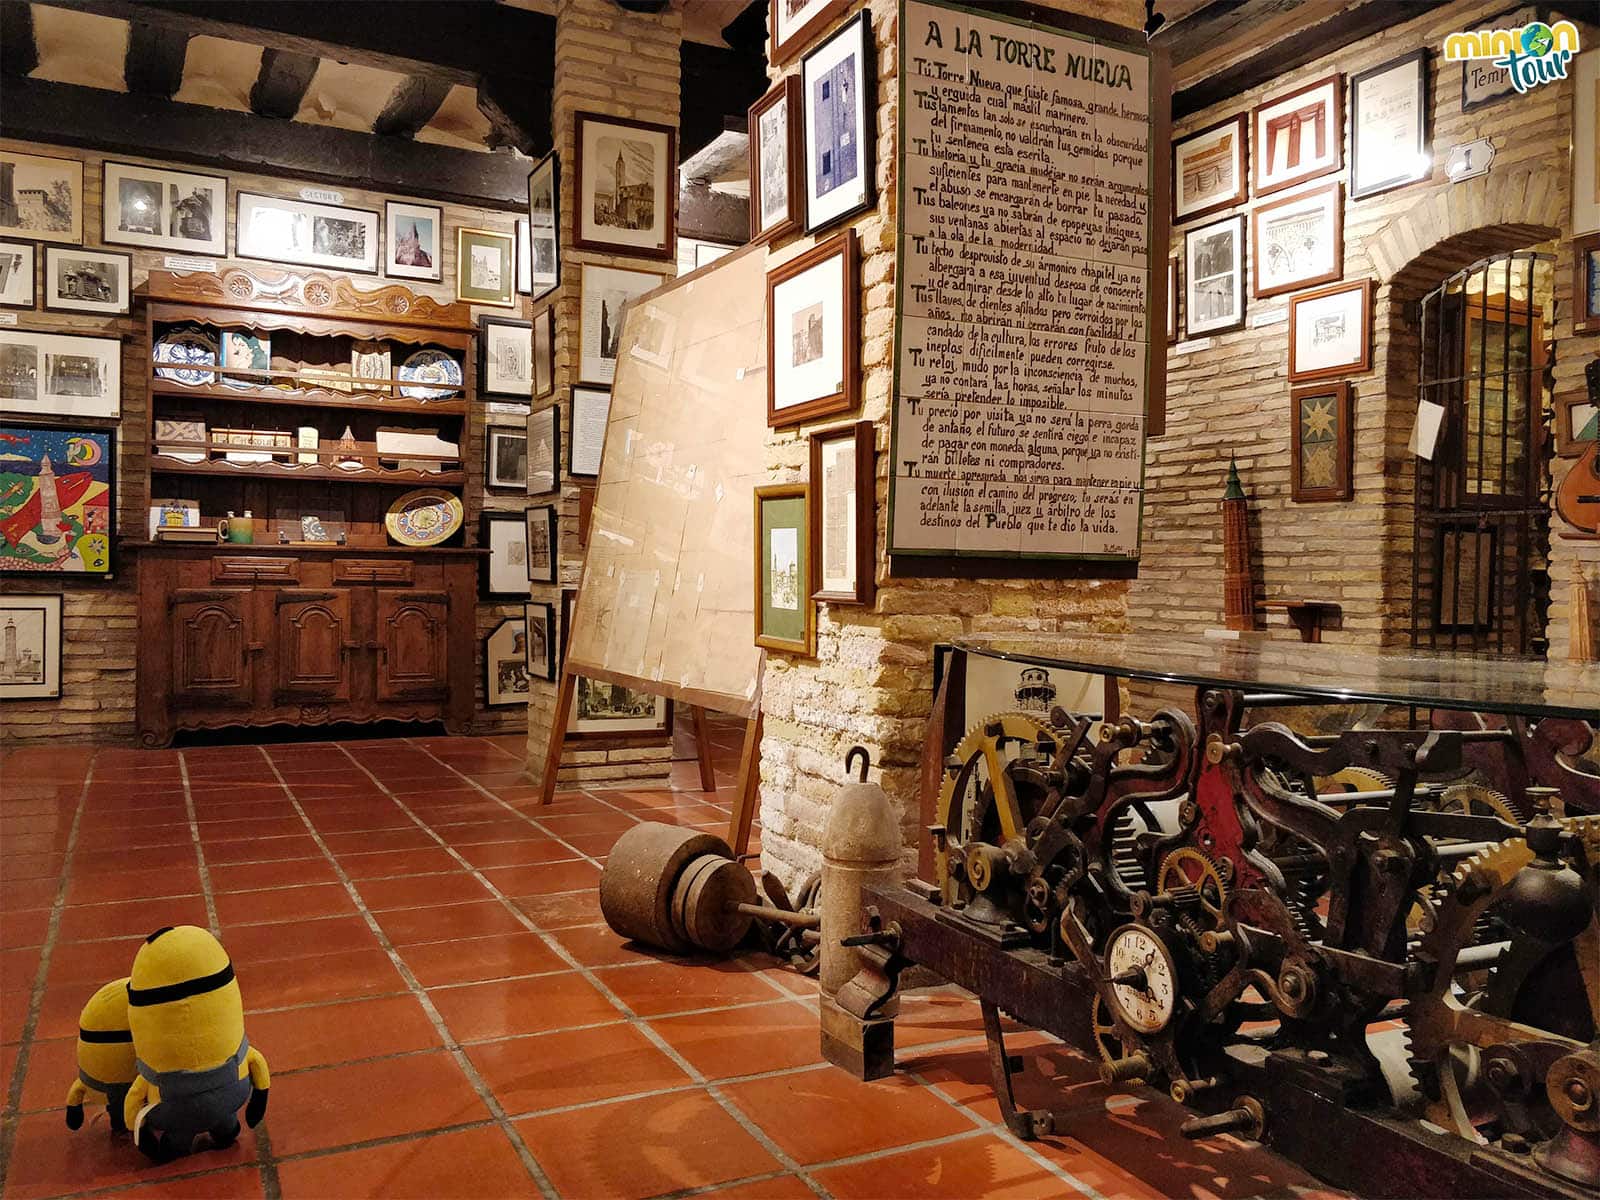 Museo de la Torre Nueva